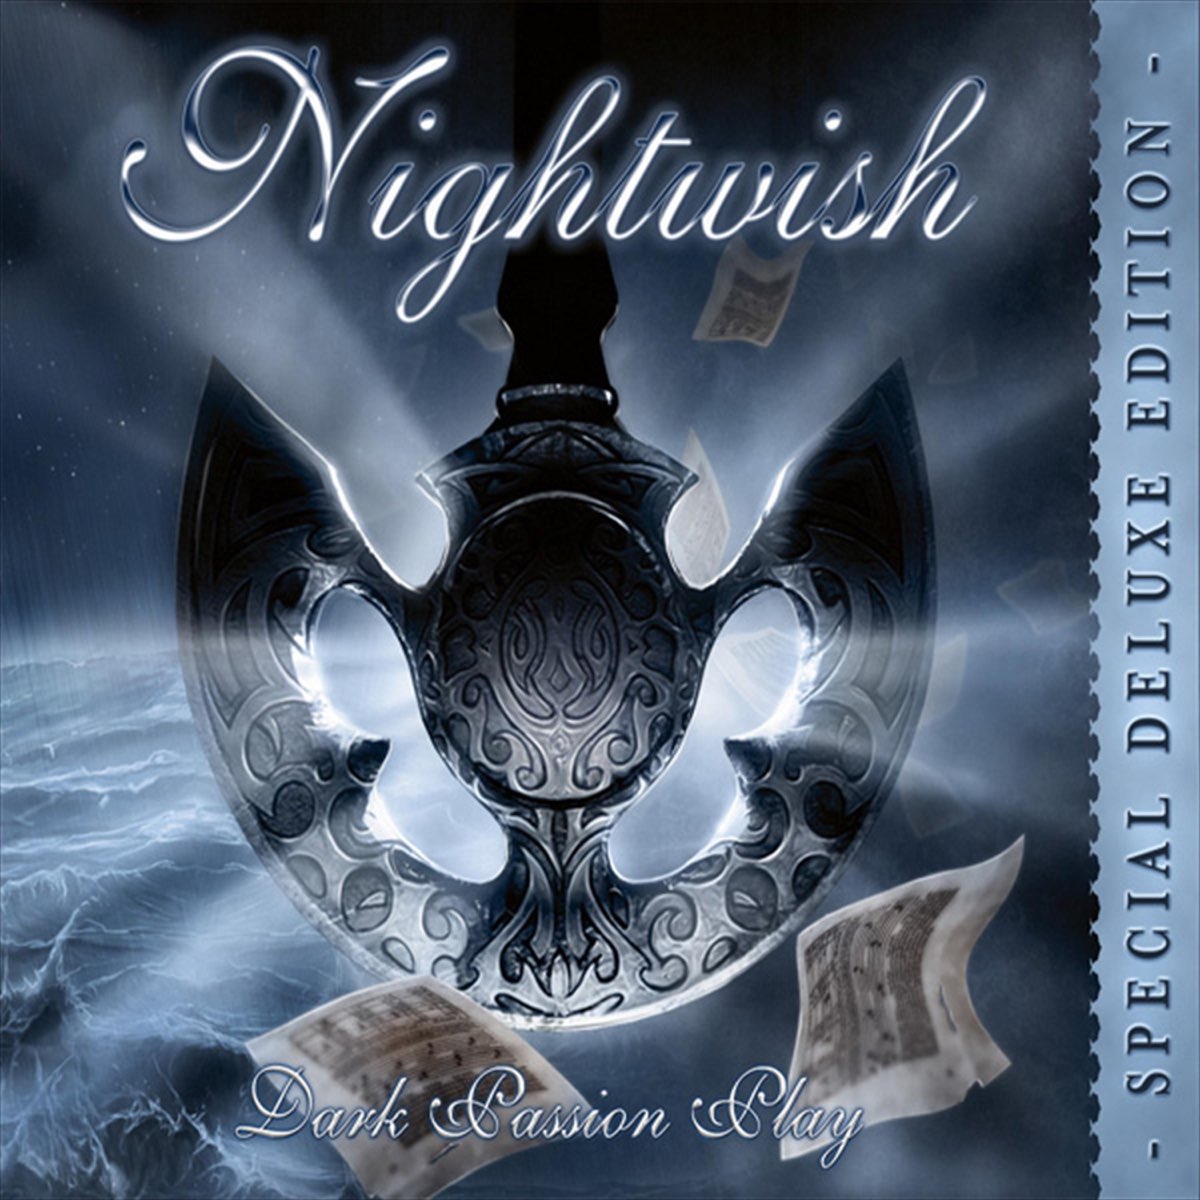 Nightwish Nemo. Nightwish бай бай. Nightwish - Dark passion Play (2007). Nightwish Dark passion Play 2008.